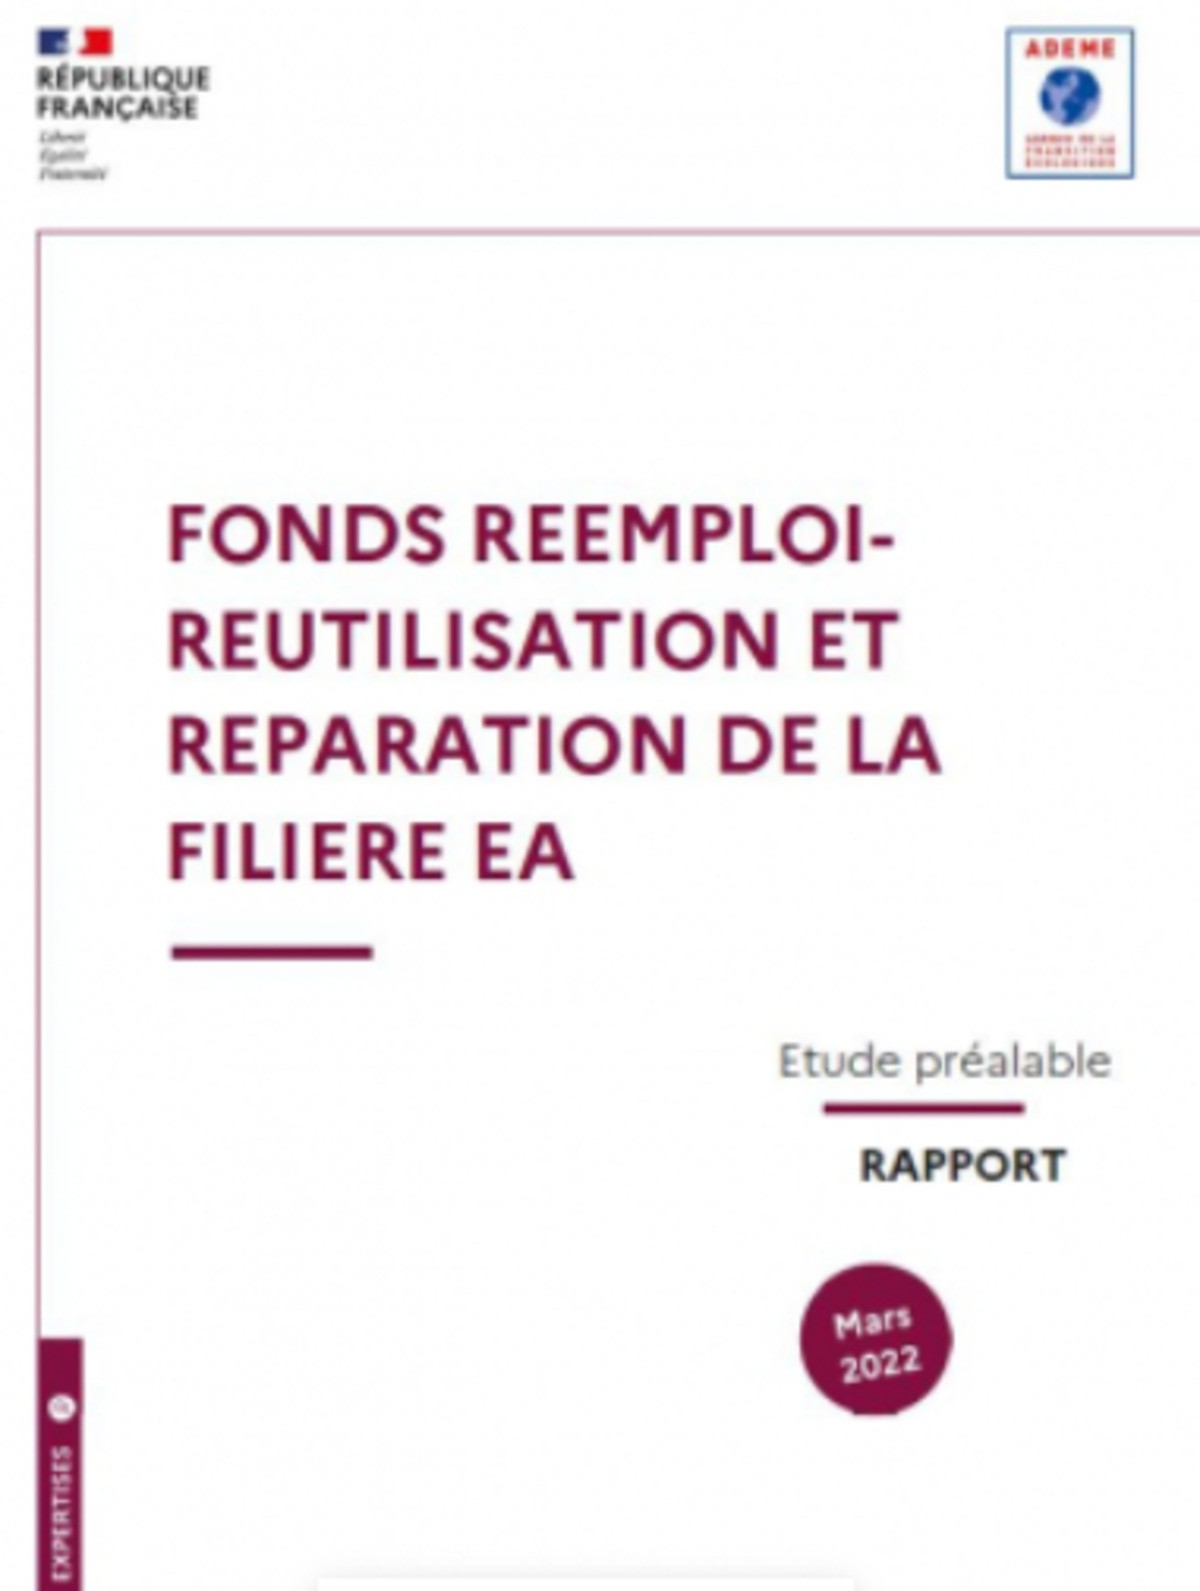 Publication de l'étude ADEME - Préalable à la mise en place du fonds réemploi-réutilisation-réparation DEA